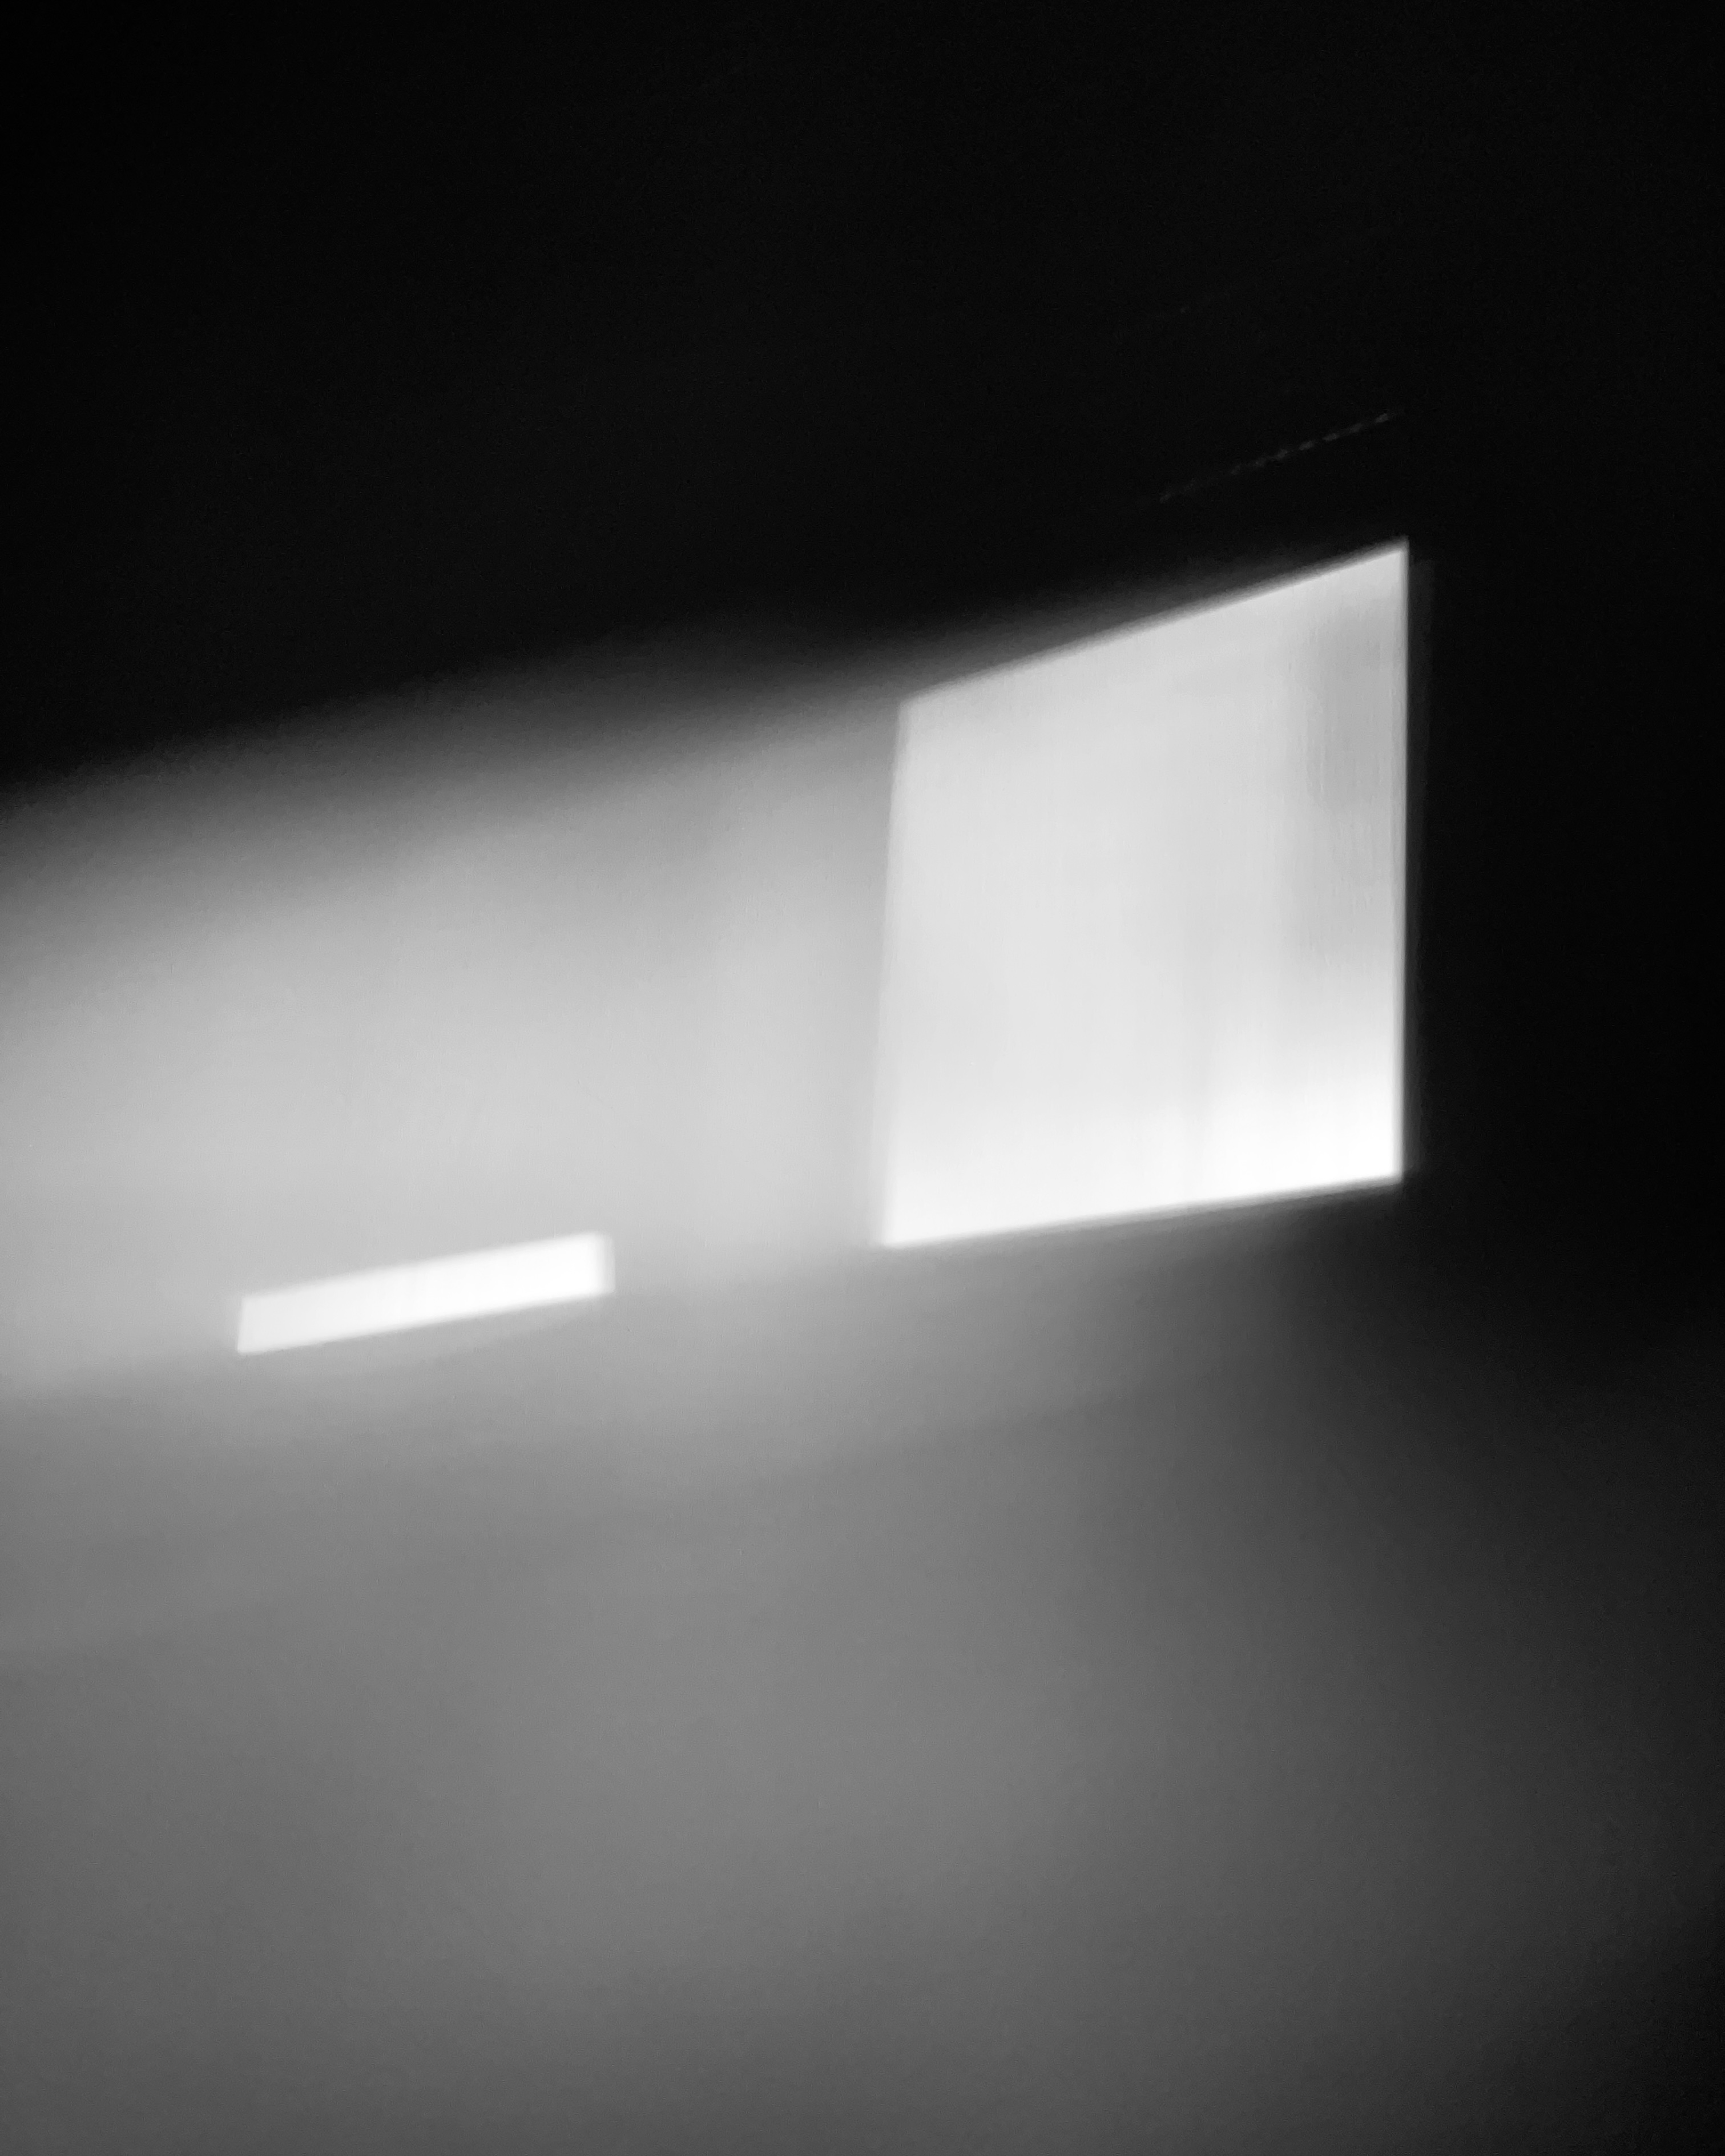 Fekete-fehér fénykép a falra vetülő furcsa árnyékokról